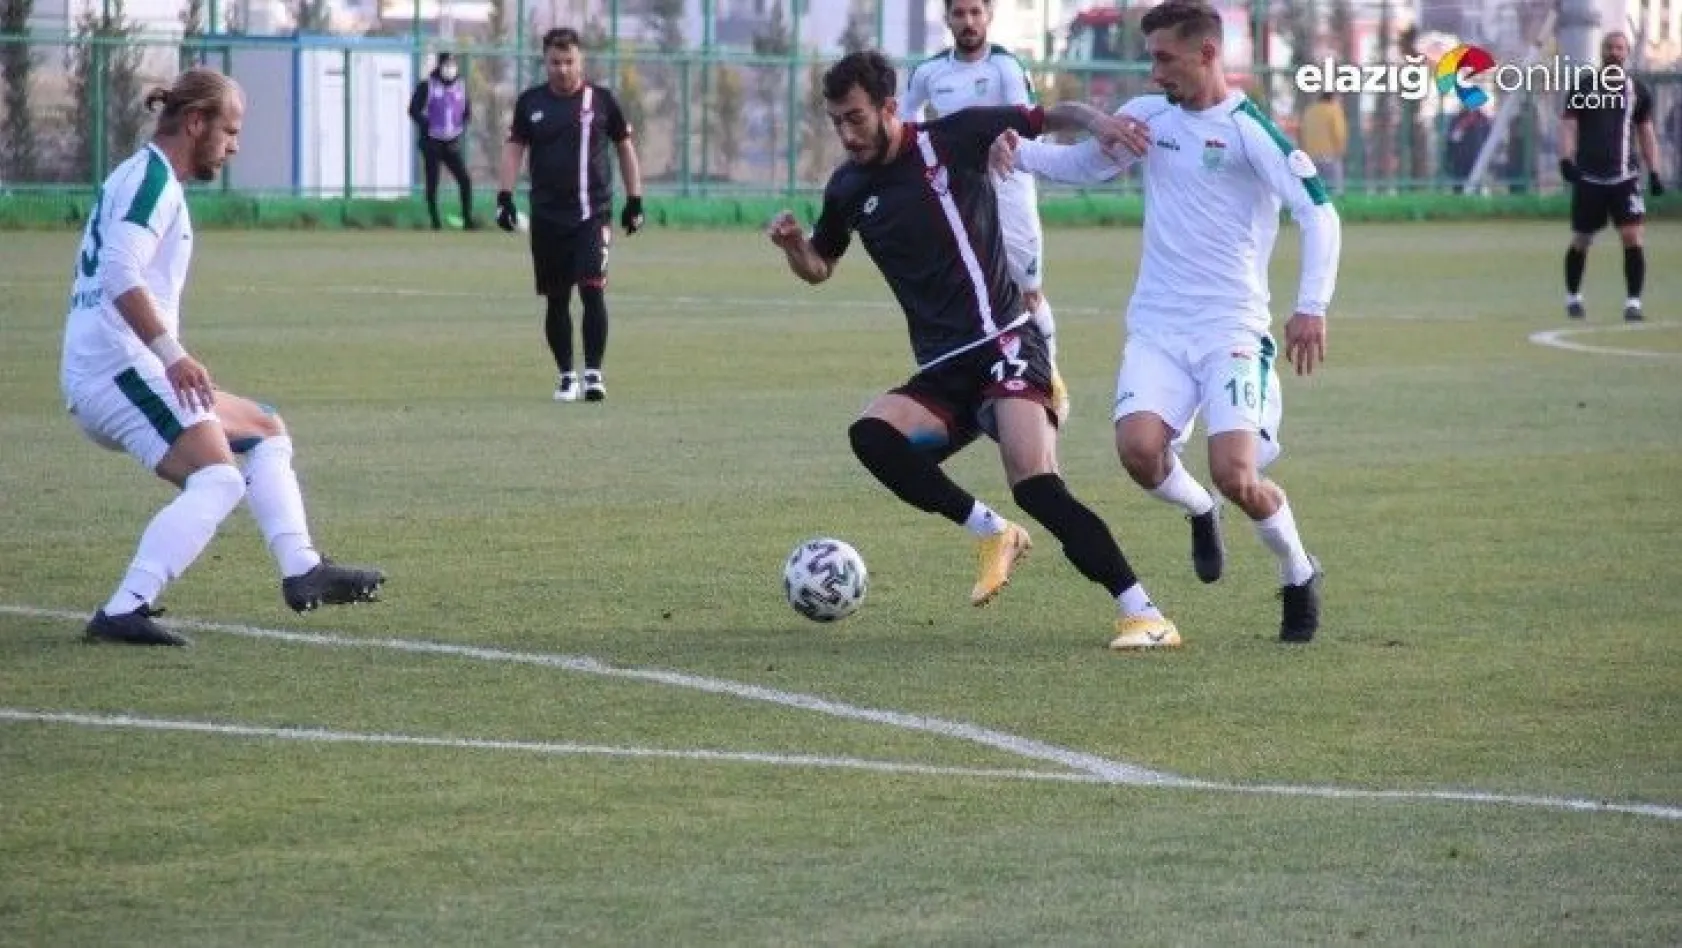 Elazığspor kendi evinde Kırşehir Belediyespor'a 5-3 mağlup oldu